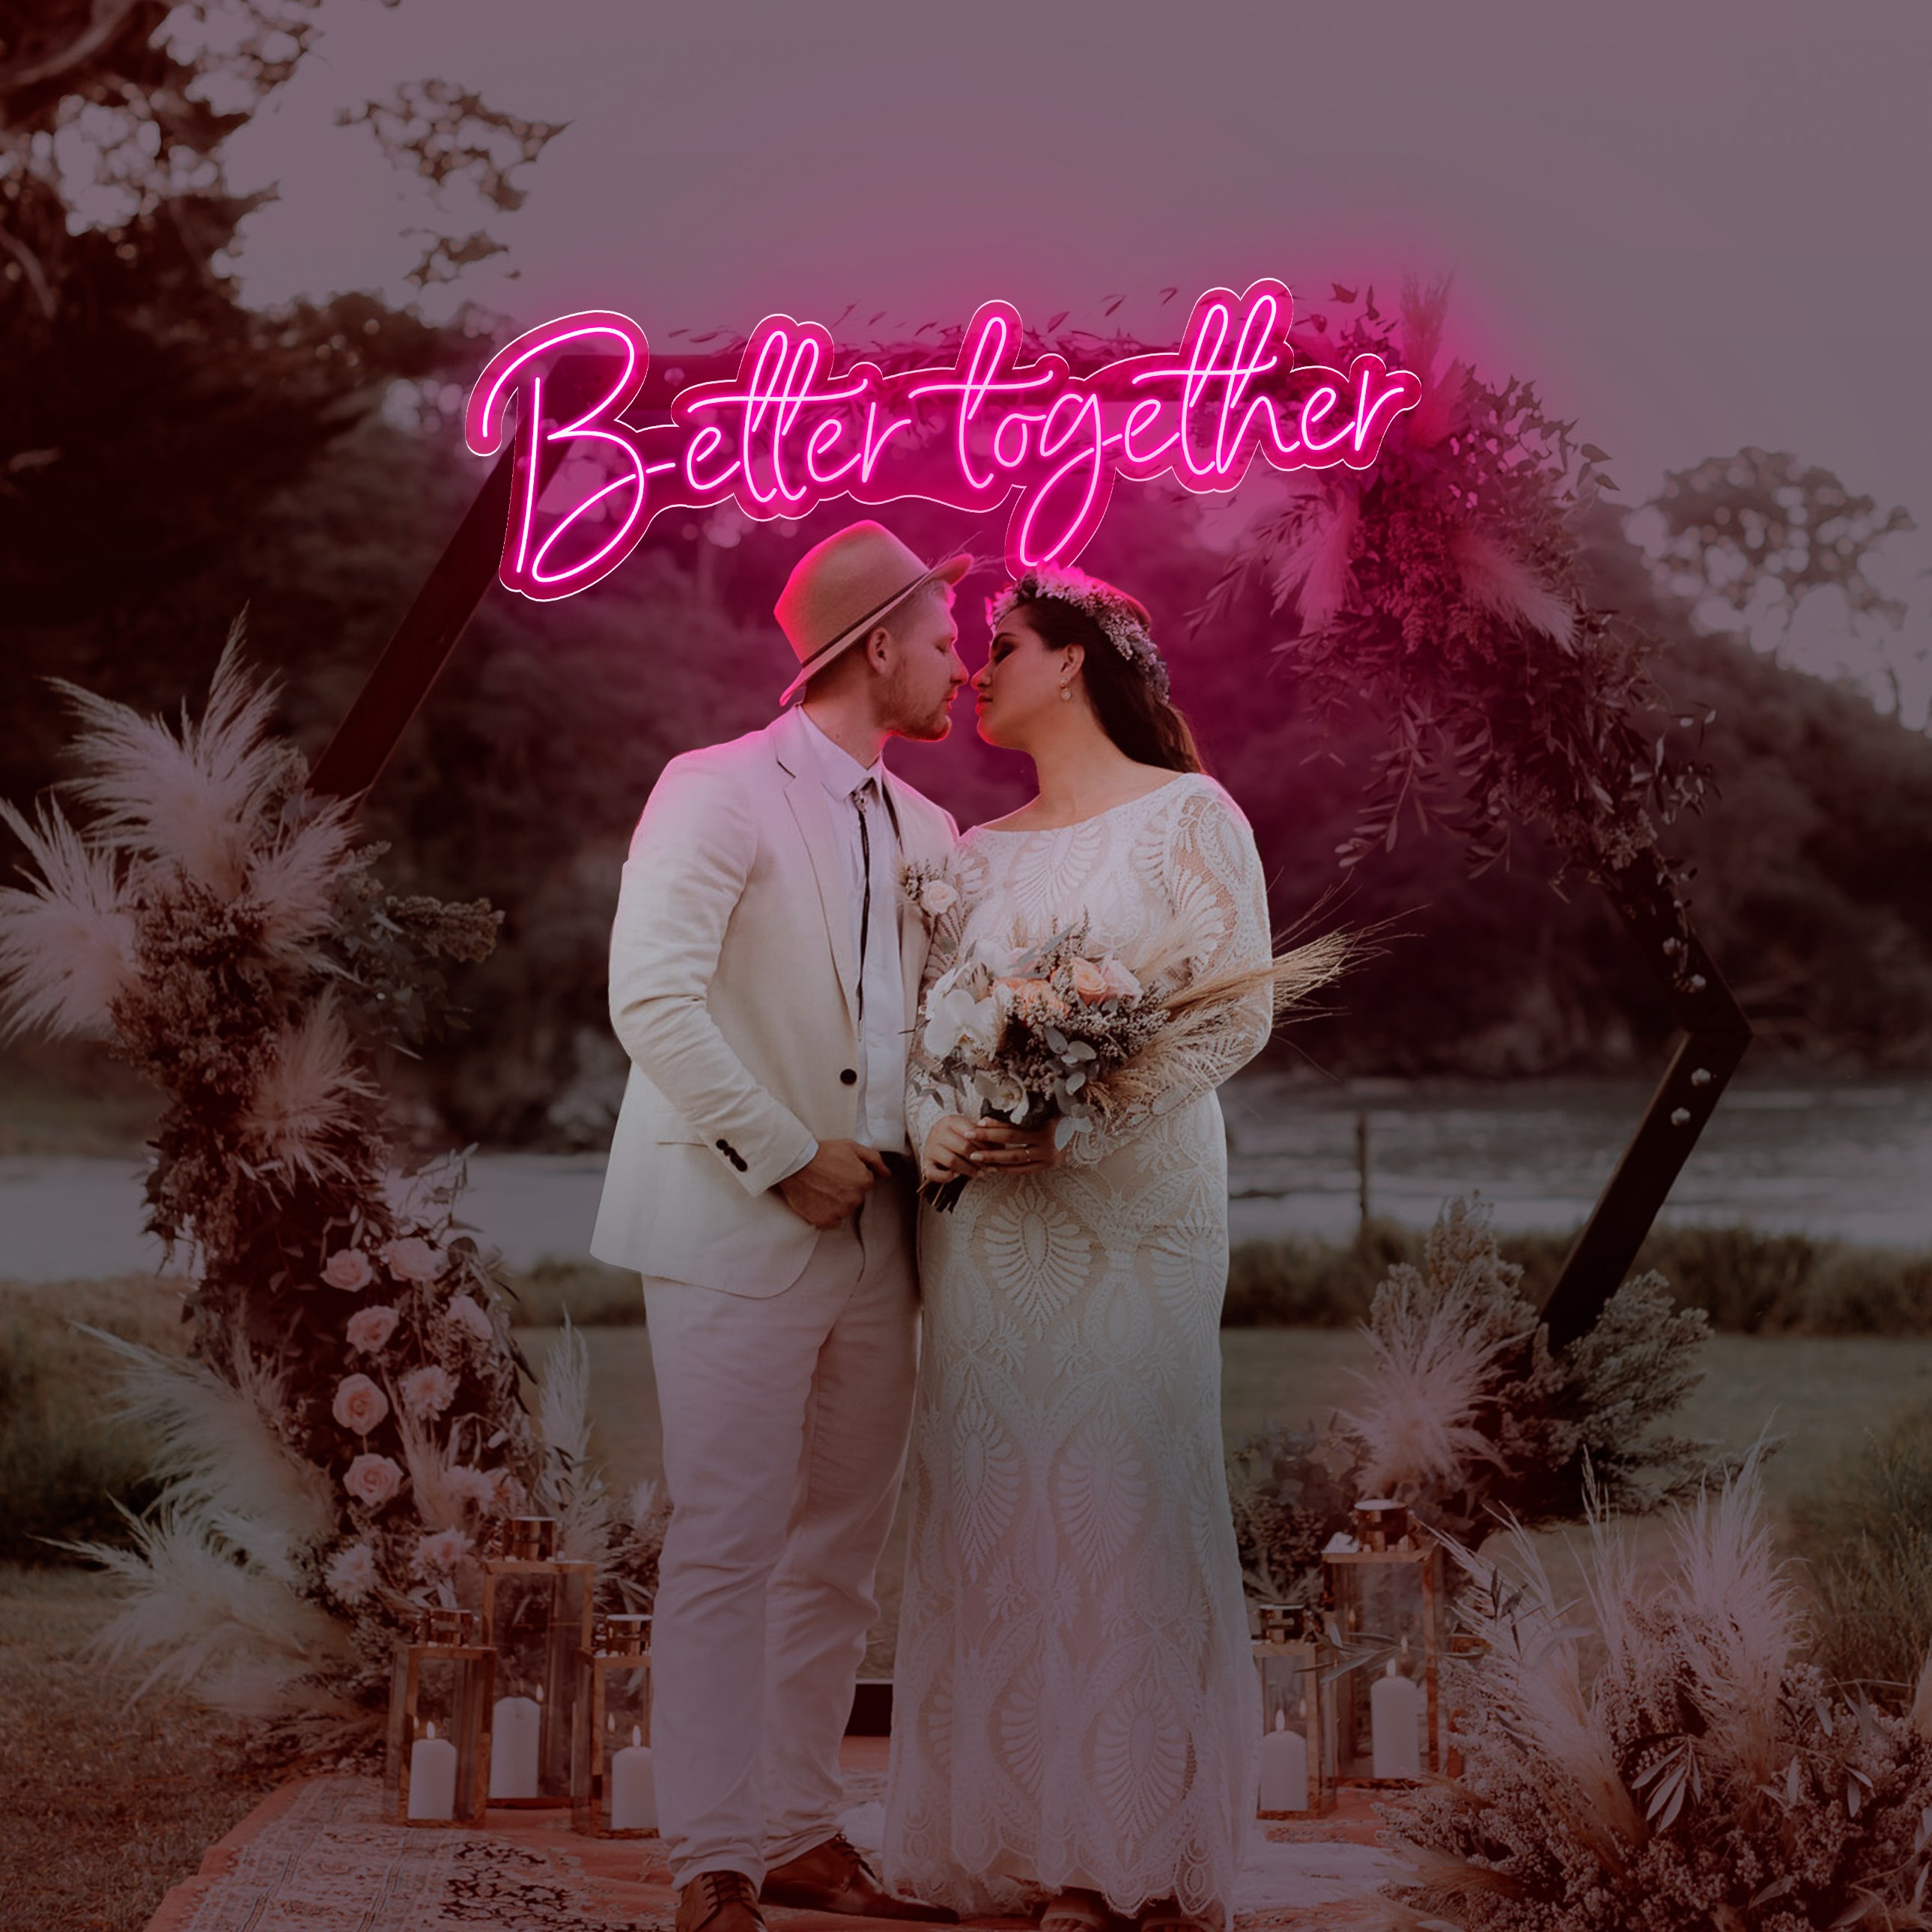 Imagem de Néon para Casamento "Better Together"